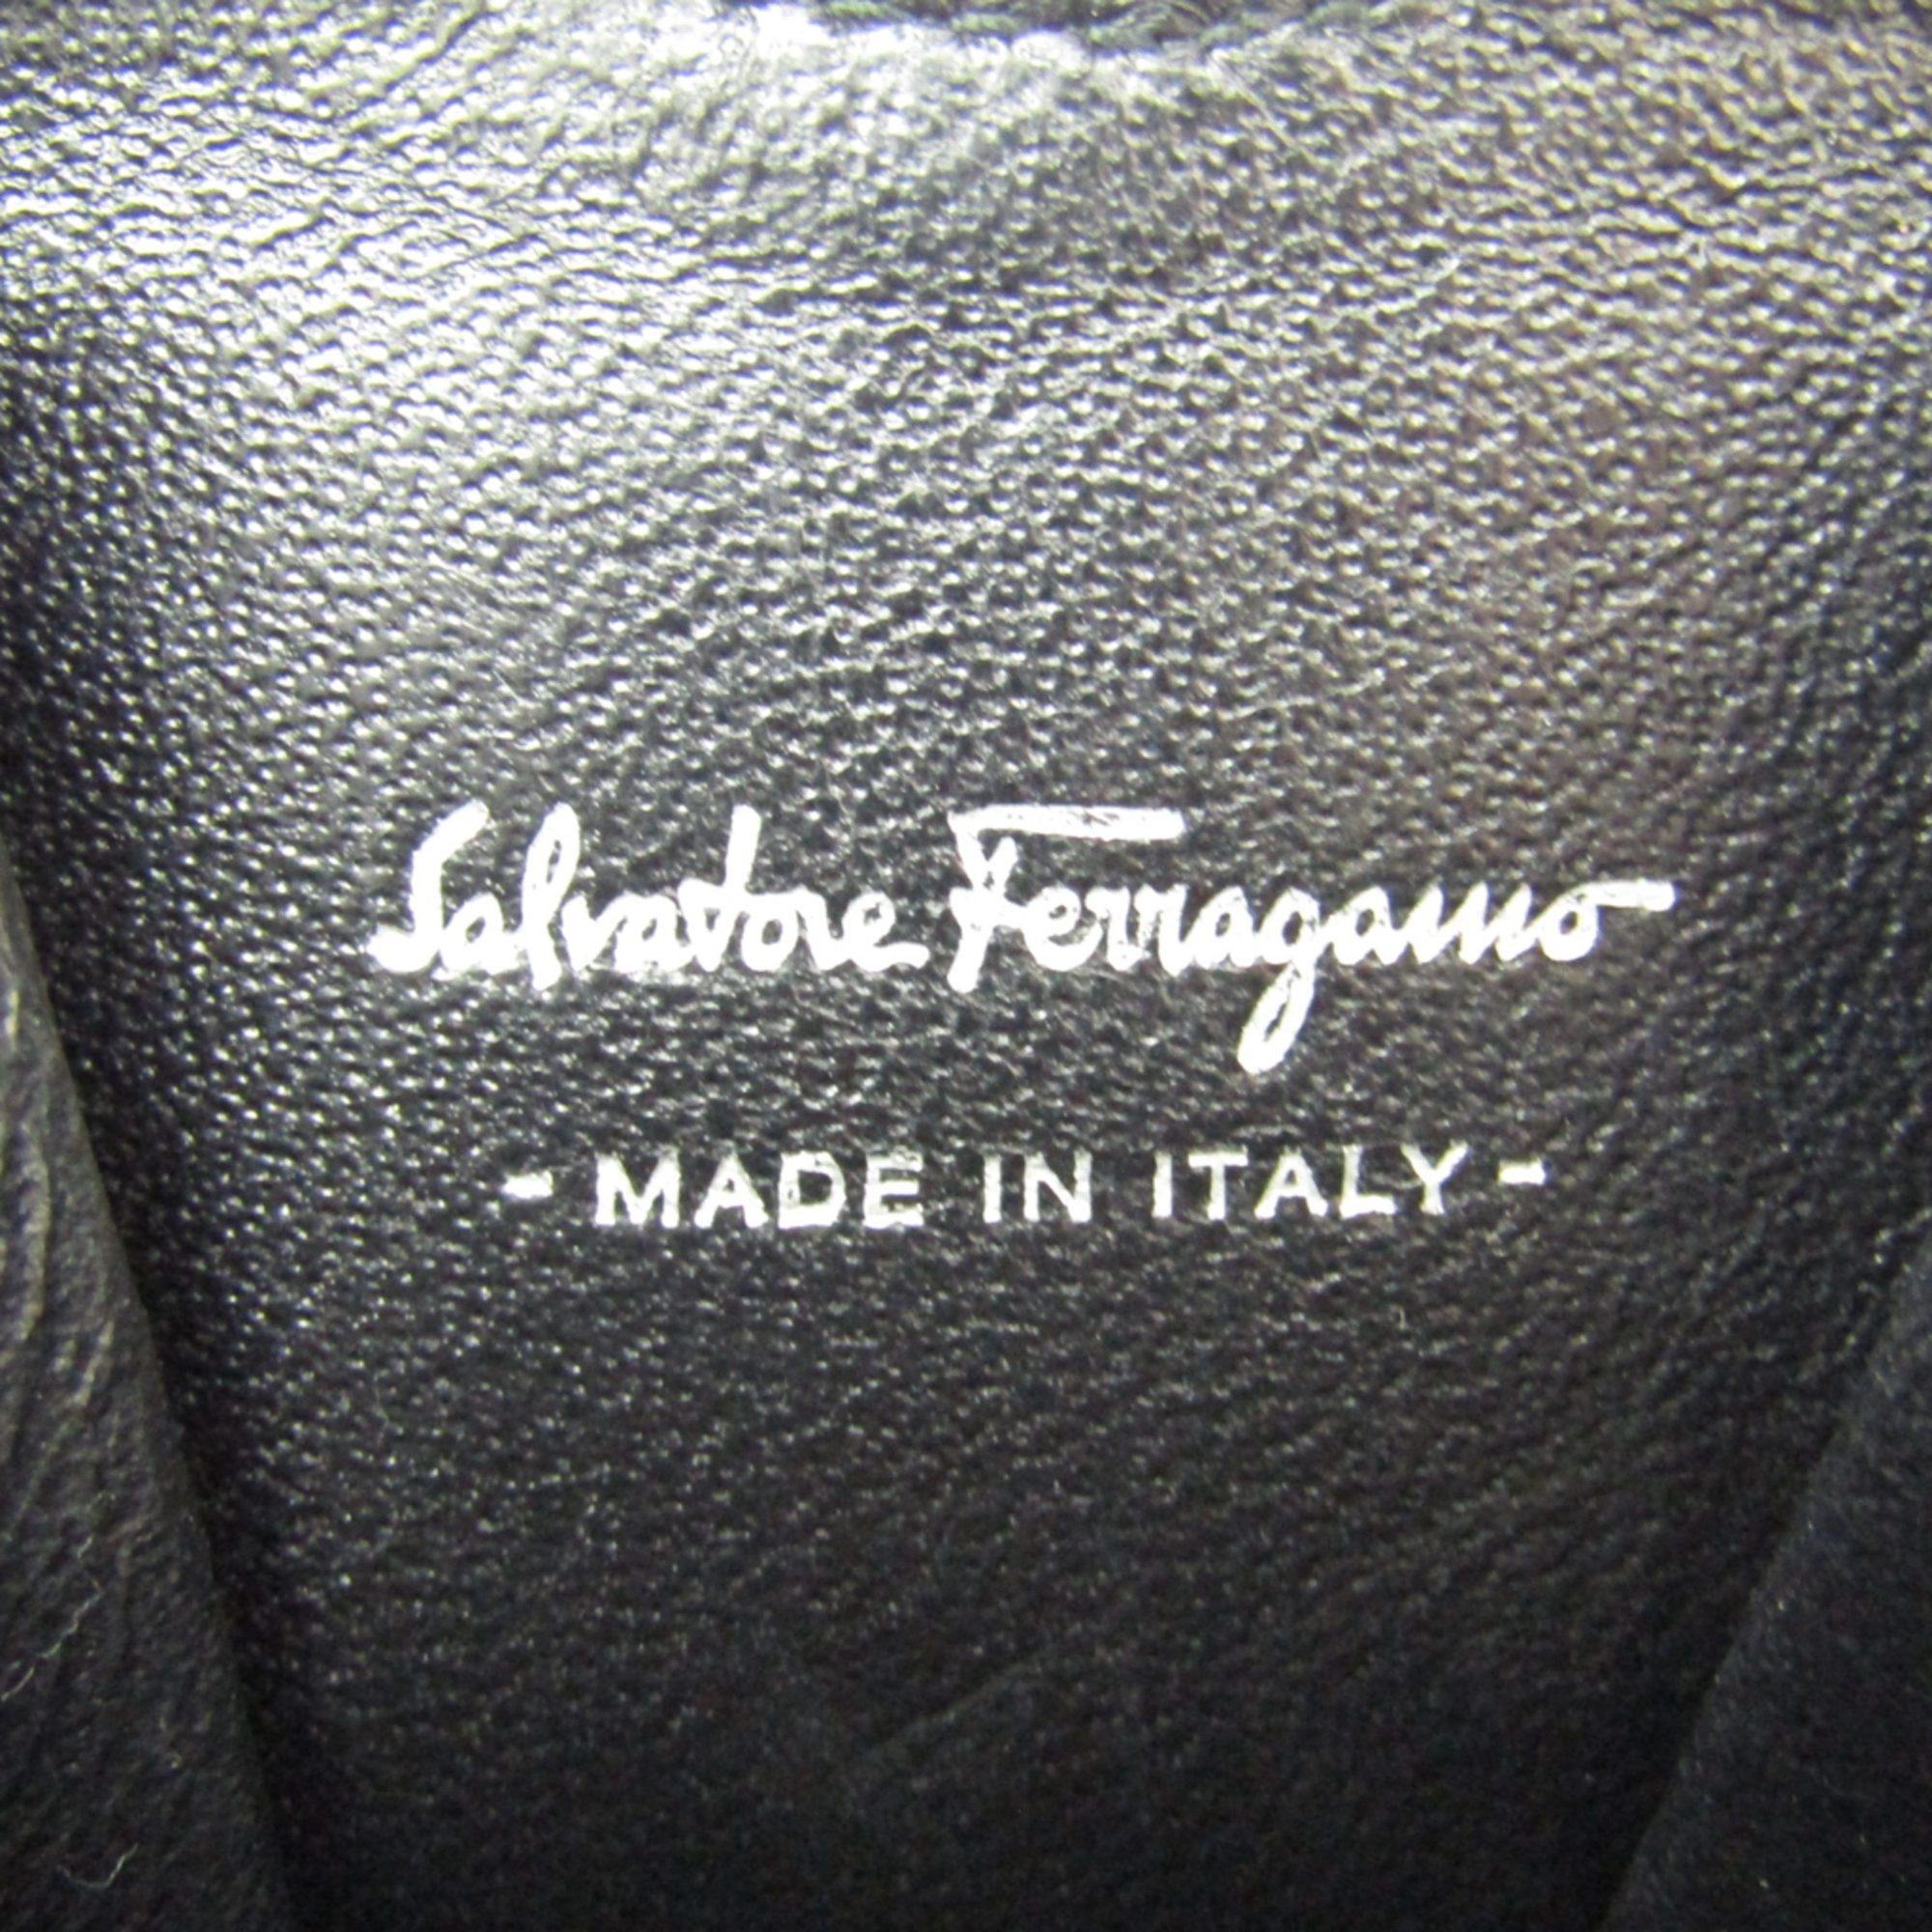 Salvatore Ferragamo Gancini 22 C113 Women's Leather Coin Purse/coin Case Black